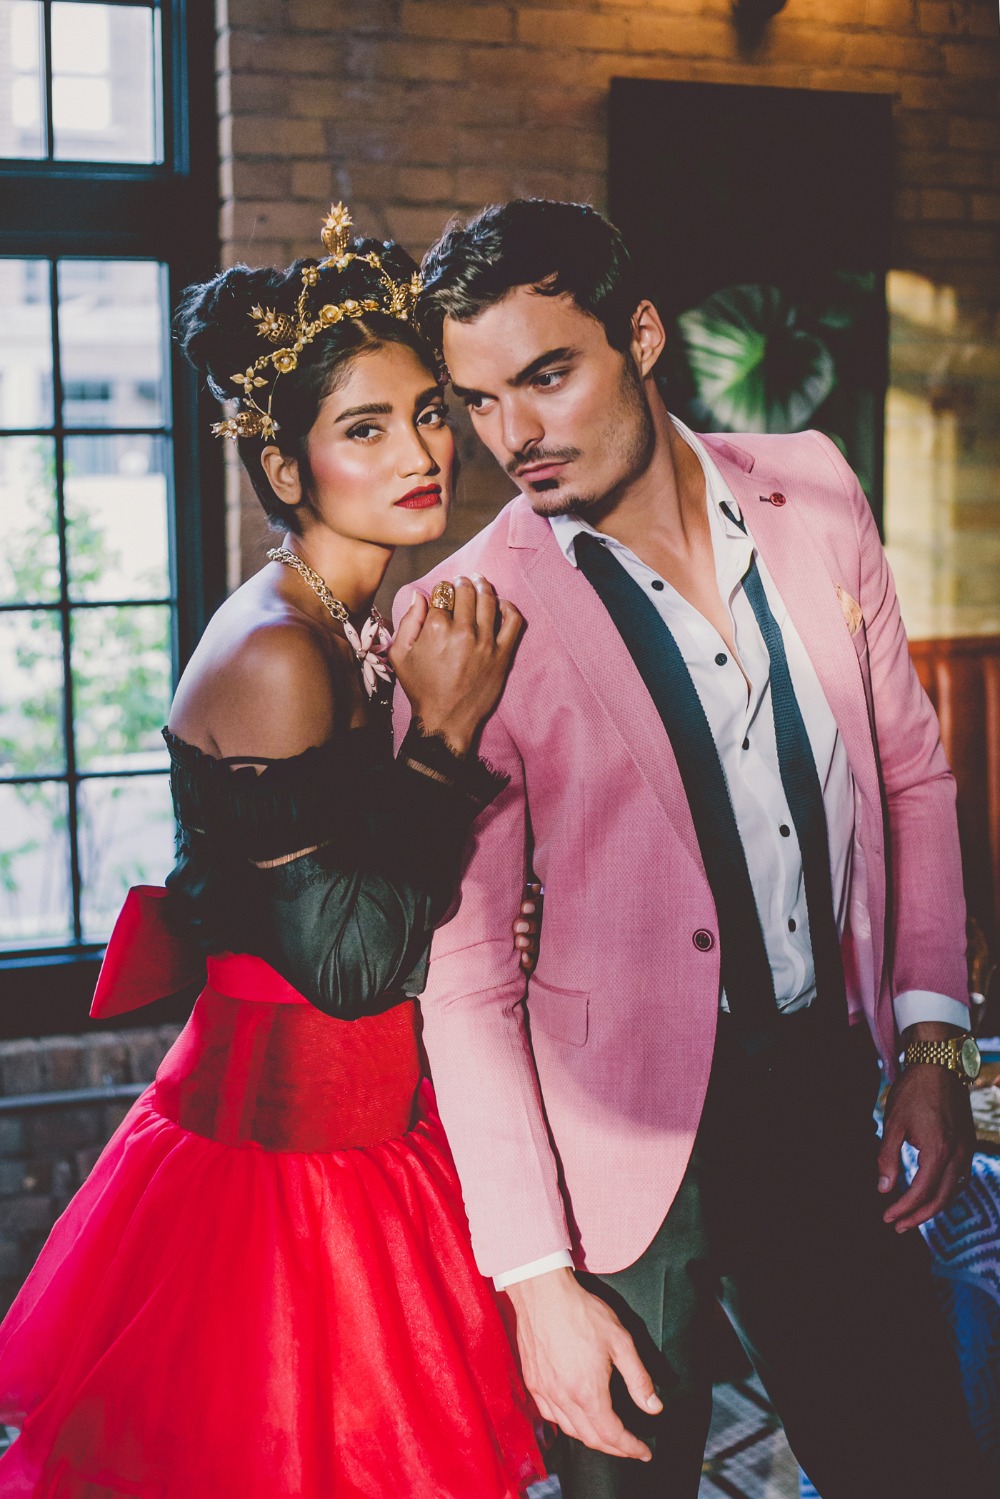 Frida Kahlo inspired wedding style